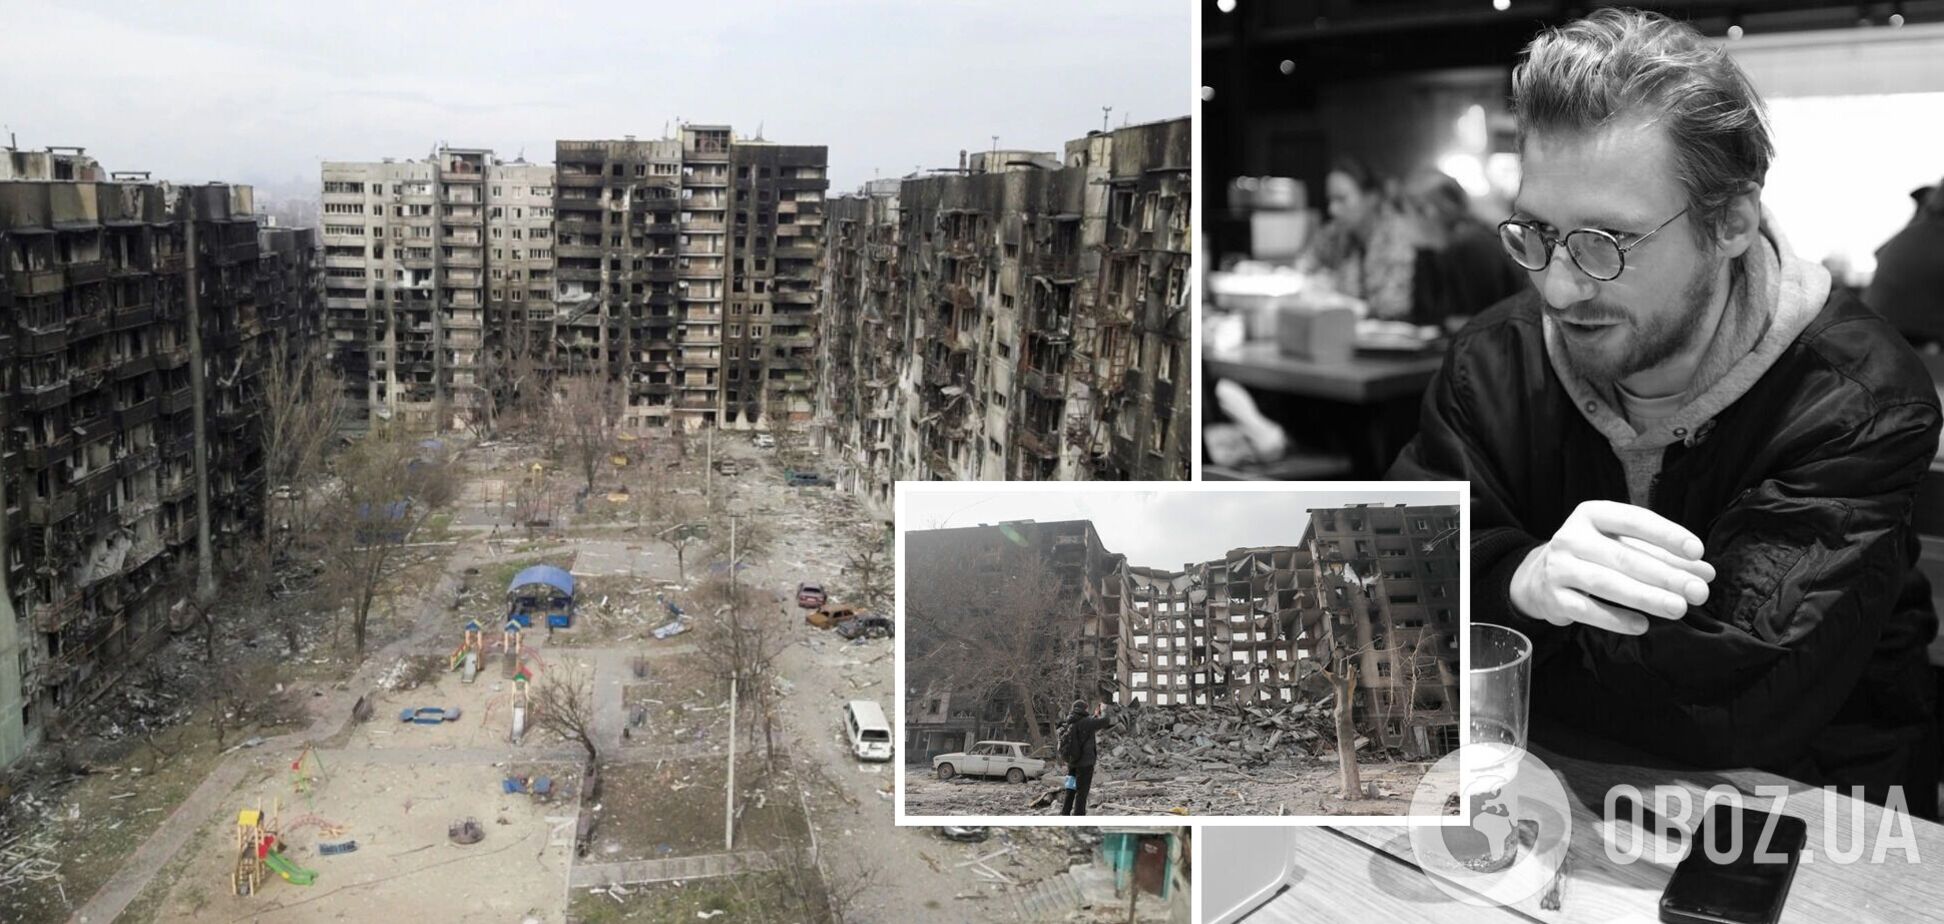 Російський журналіст, який втік із РФ від мобілізації, розхвалив зруйновані будинки в Маріуполі як місце для фотосесій